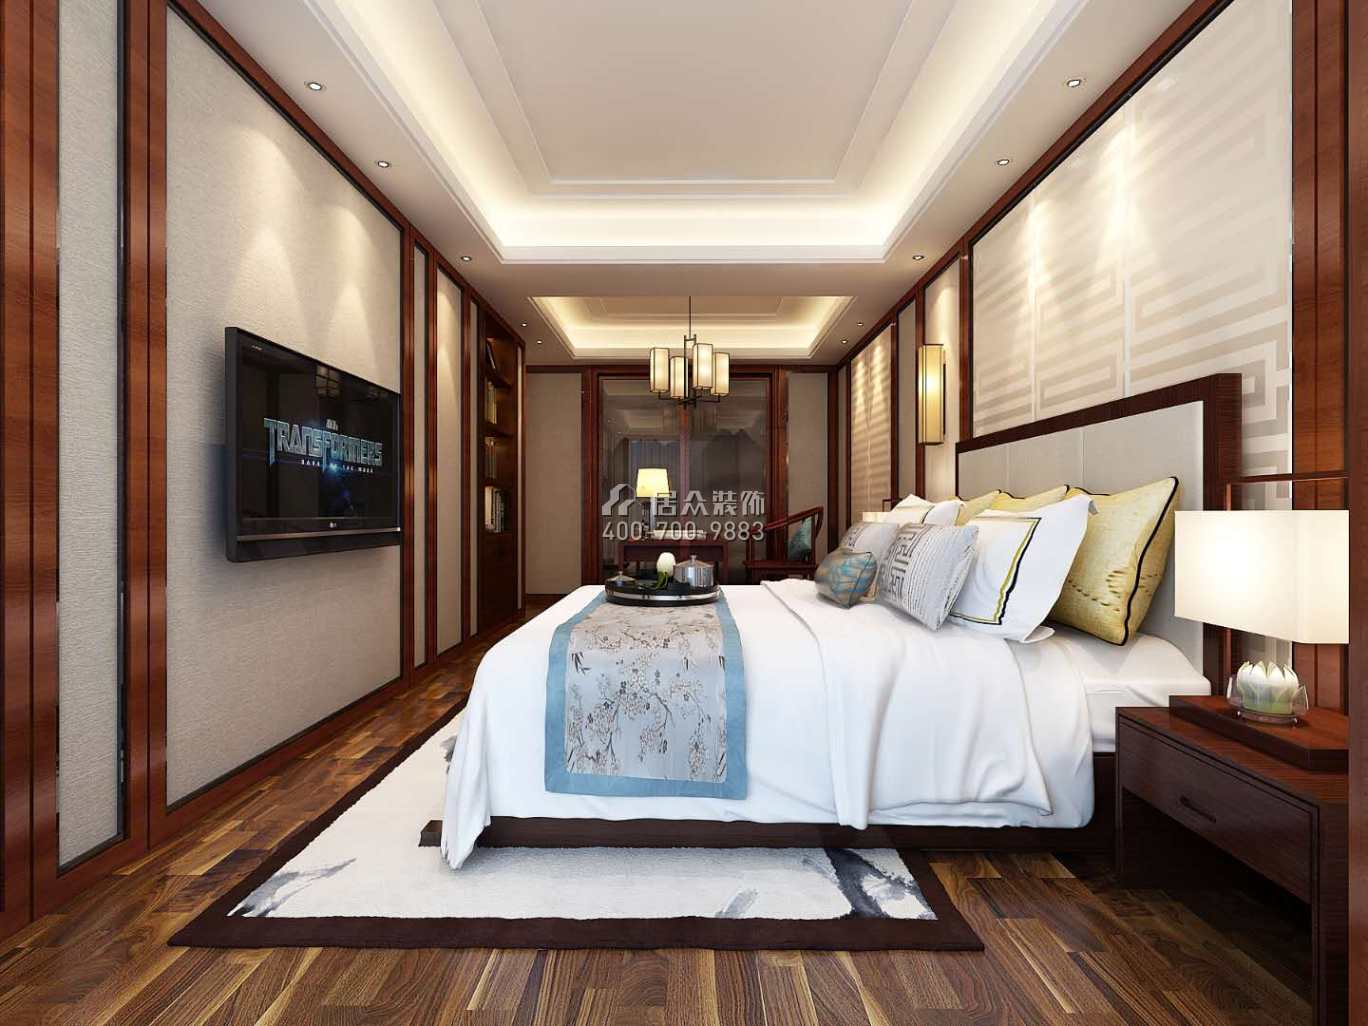 水榭花城中城美域236平方米中式风格复式户型卧室装修效果图